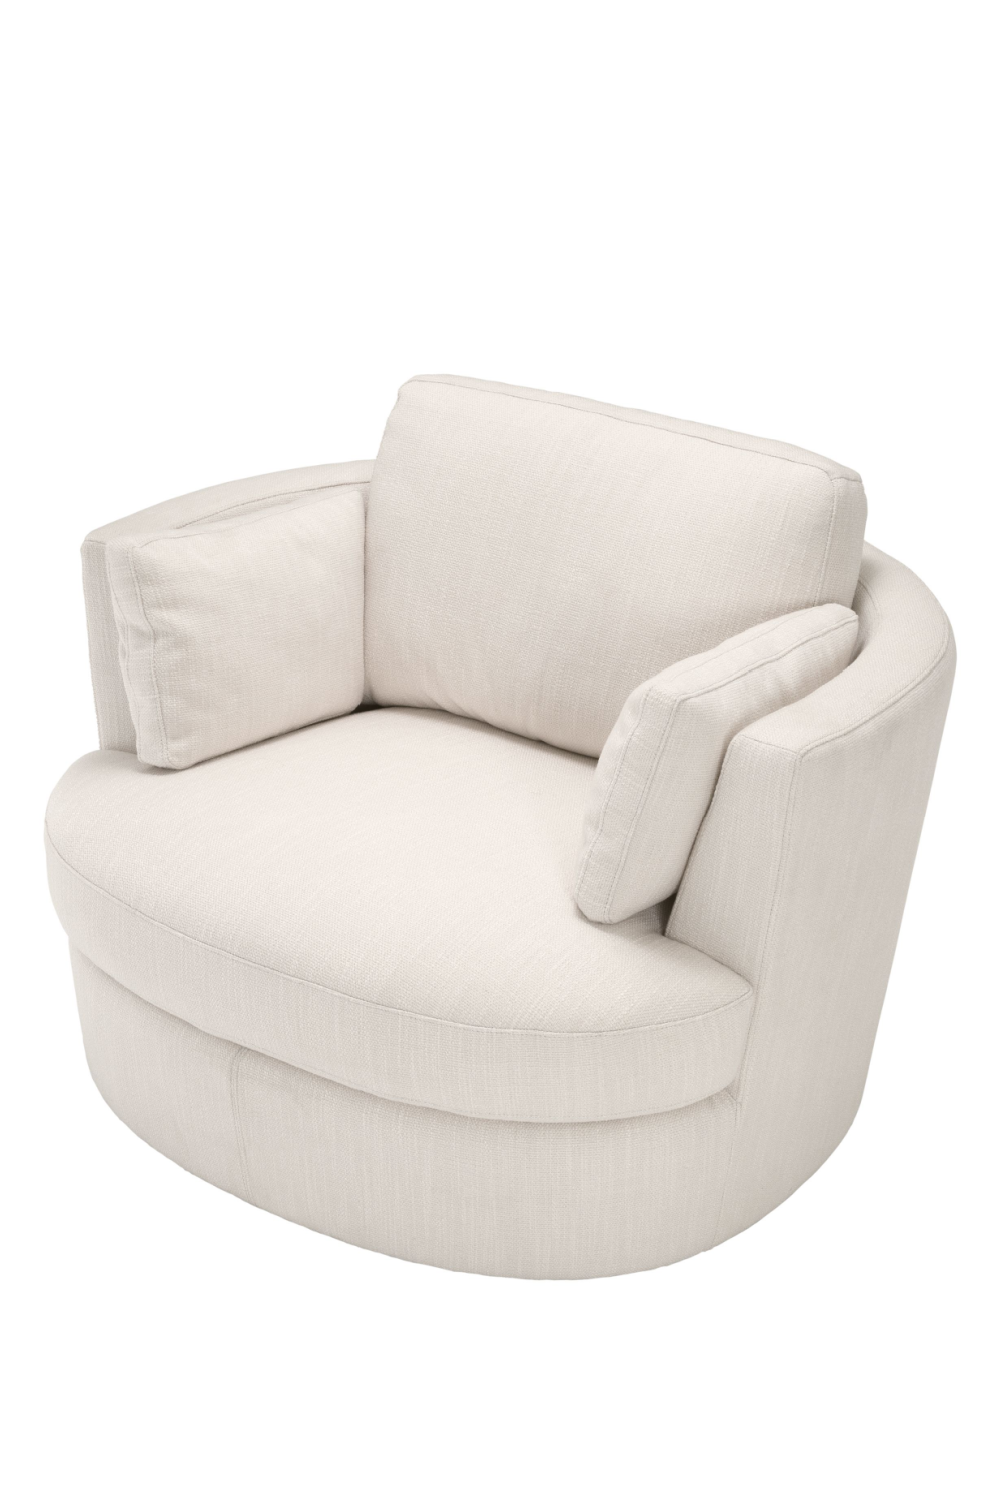 White Club Swivel Chair | Eichholtz Clarissa | Oroa.com